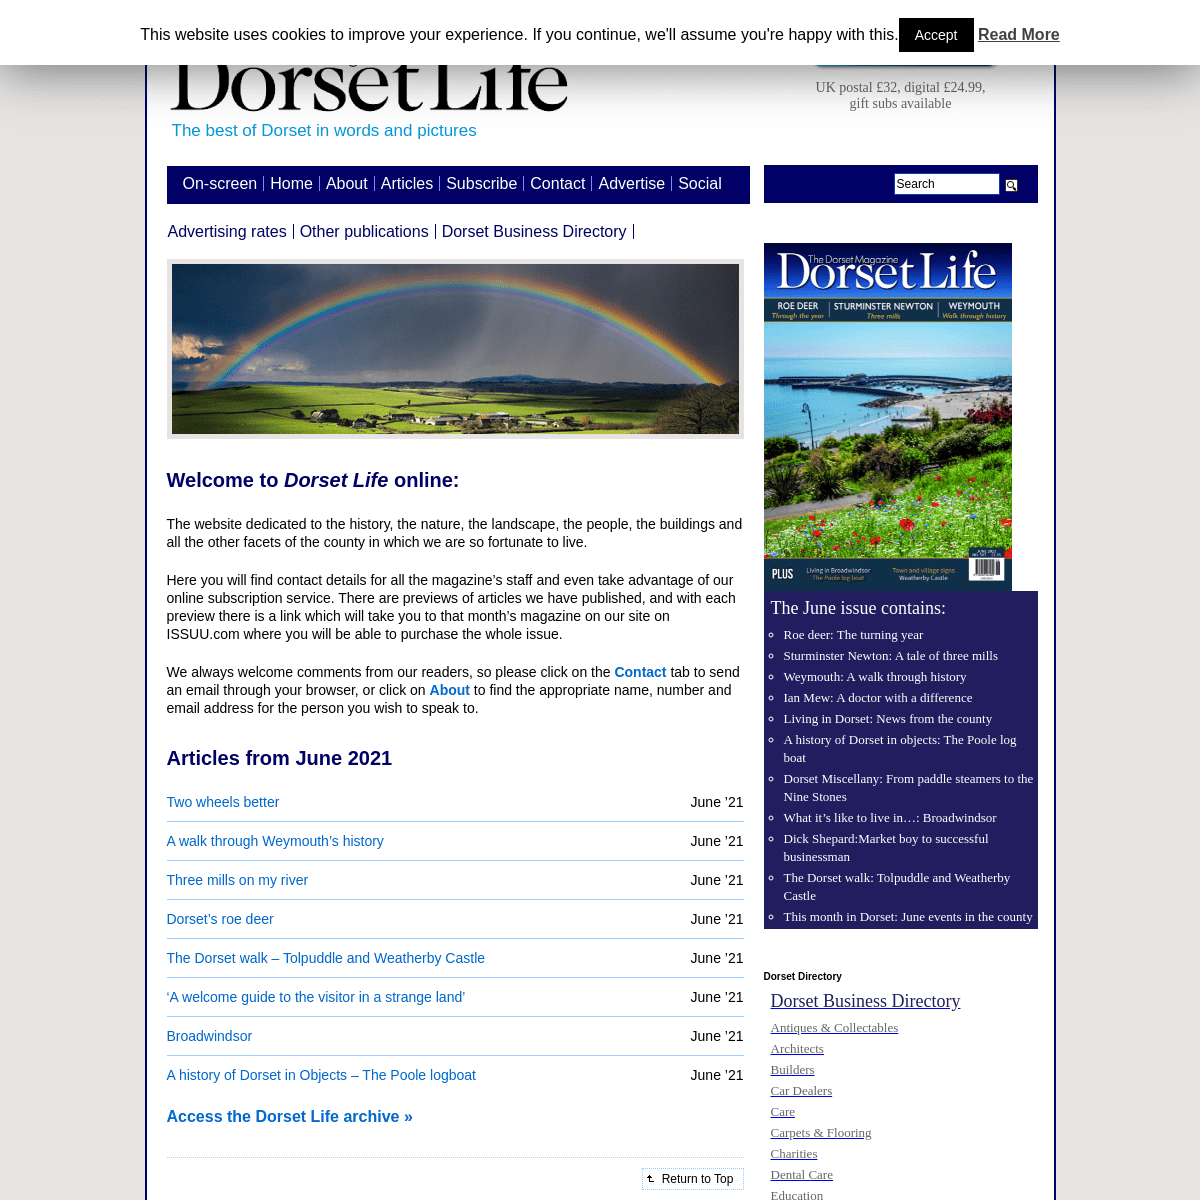 A complete backup of https://dorsetlife.co.uk